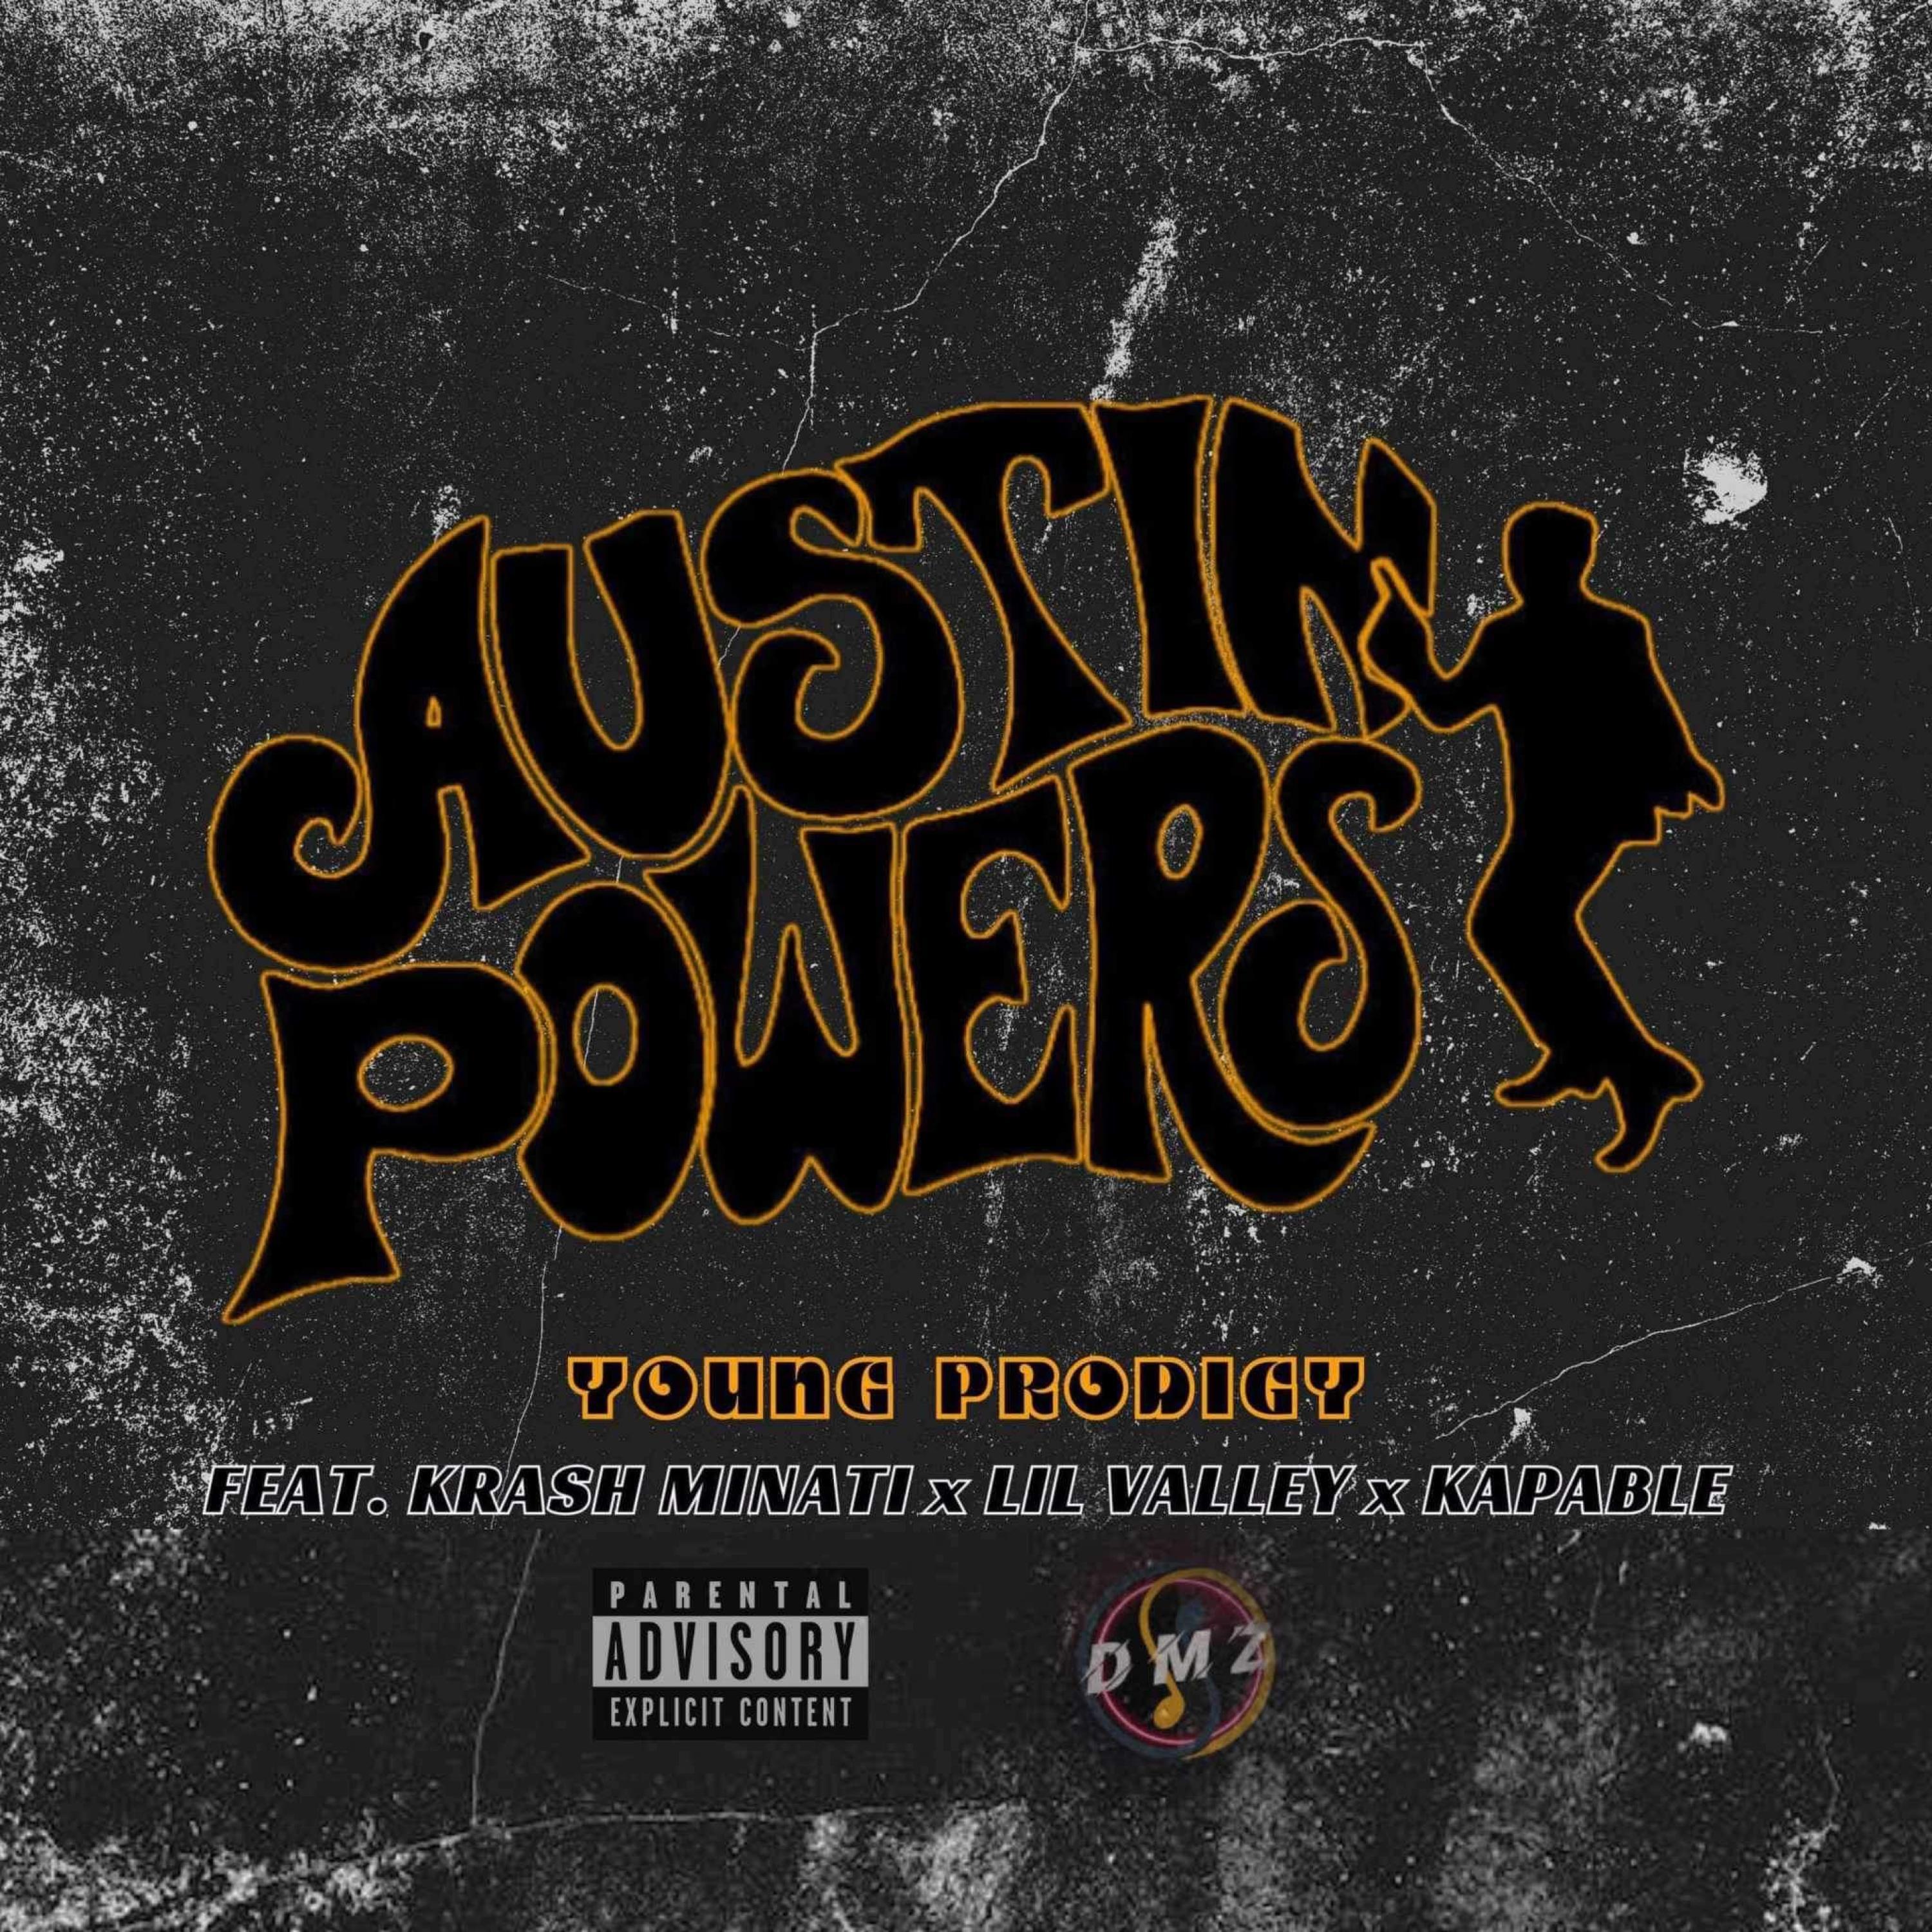 Young prodigy - Austin Powers (feat. Krash Minati)